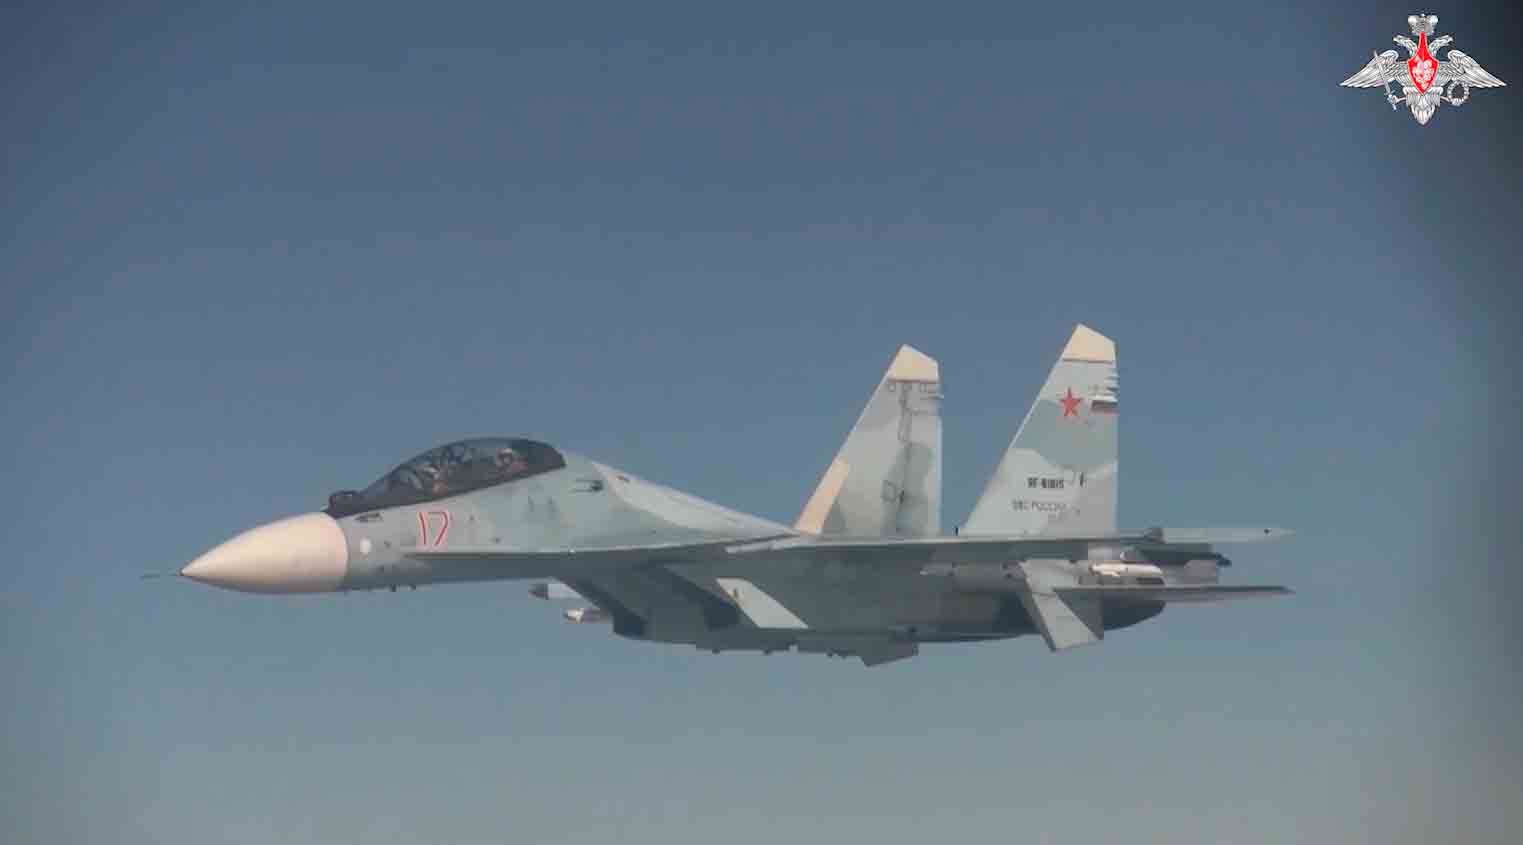 Zdjęcia ujawniają, że bombowce eskortowane były przez rosyjskie myśliwce Su-35S i Su-30SM